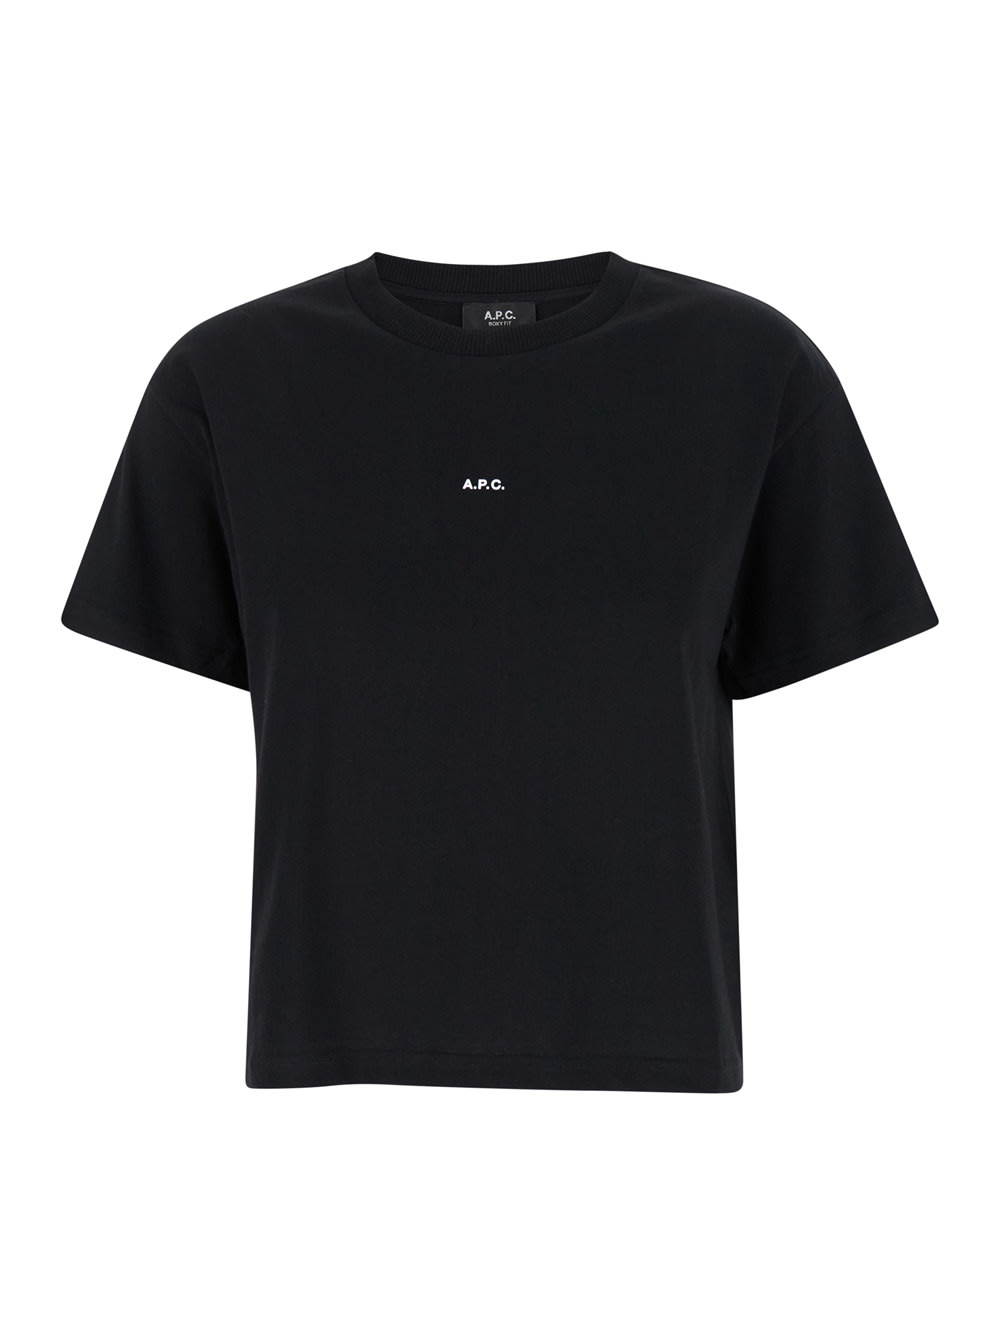 A. P.C. Black Cotton T-shirt